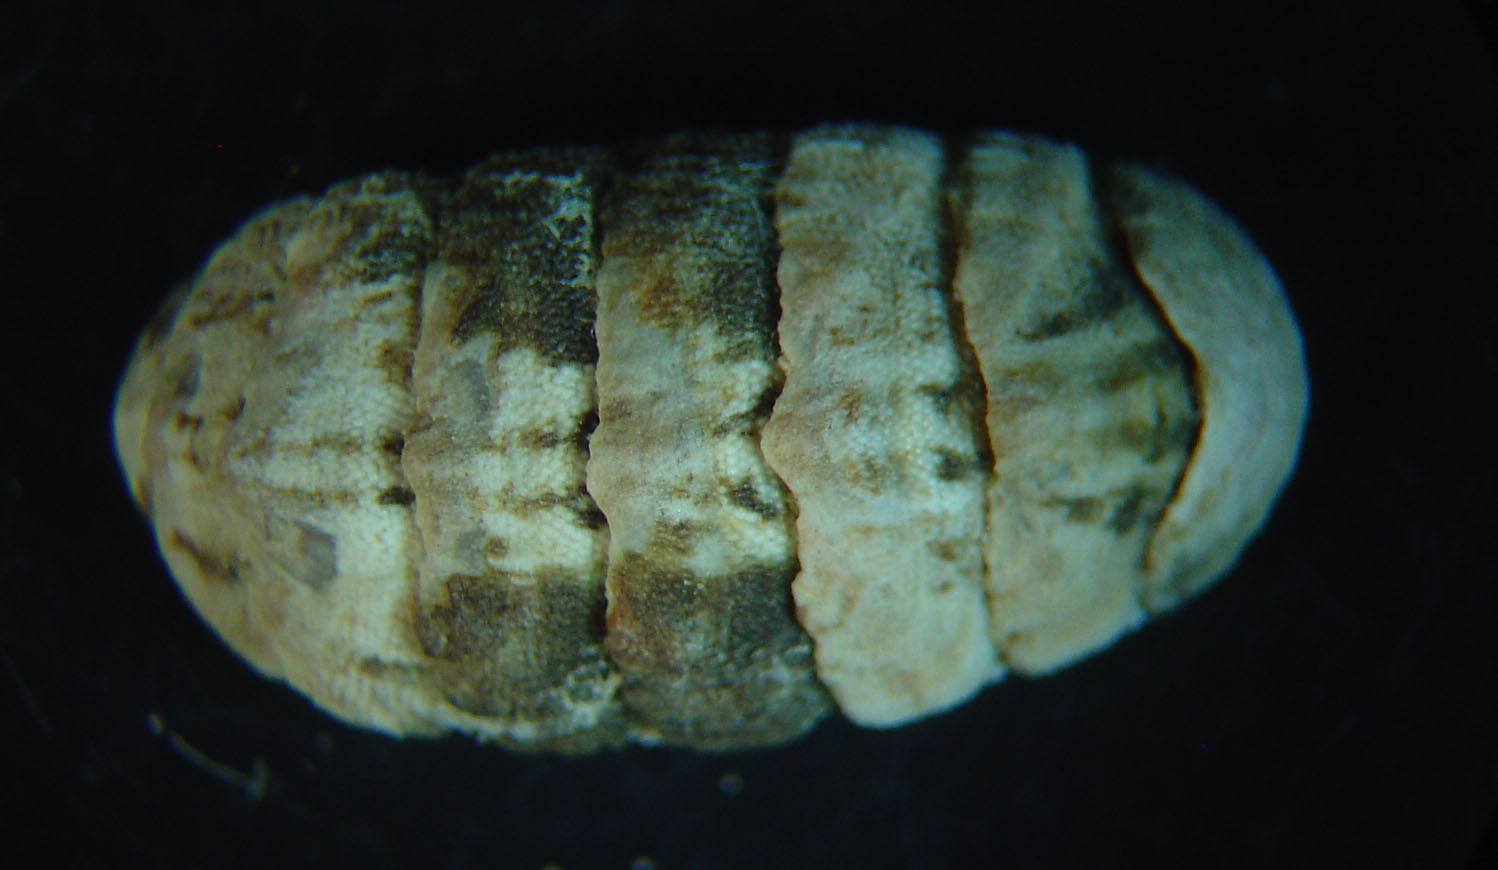 Lepidochitona caprearum